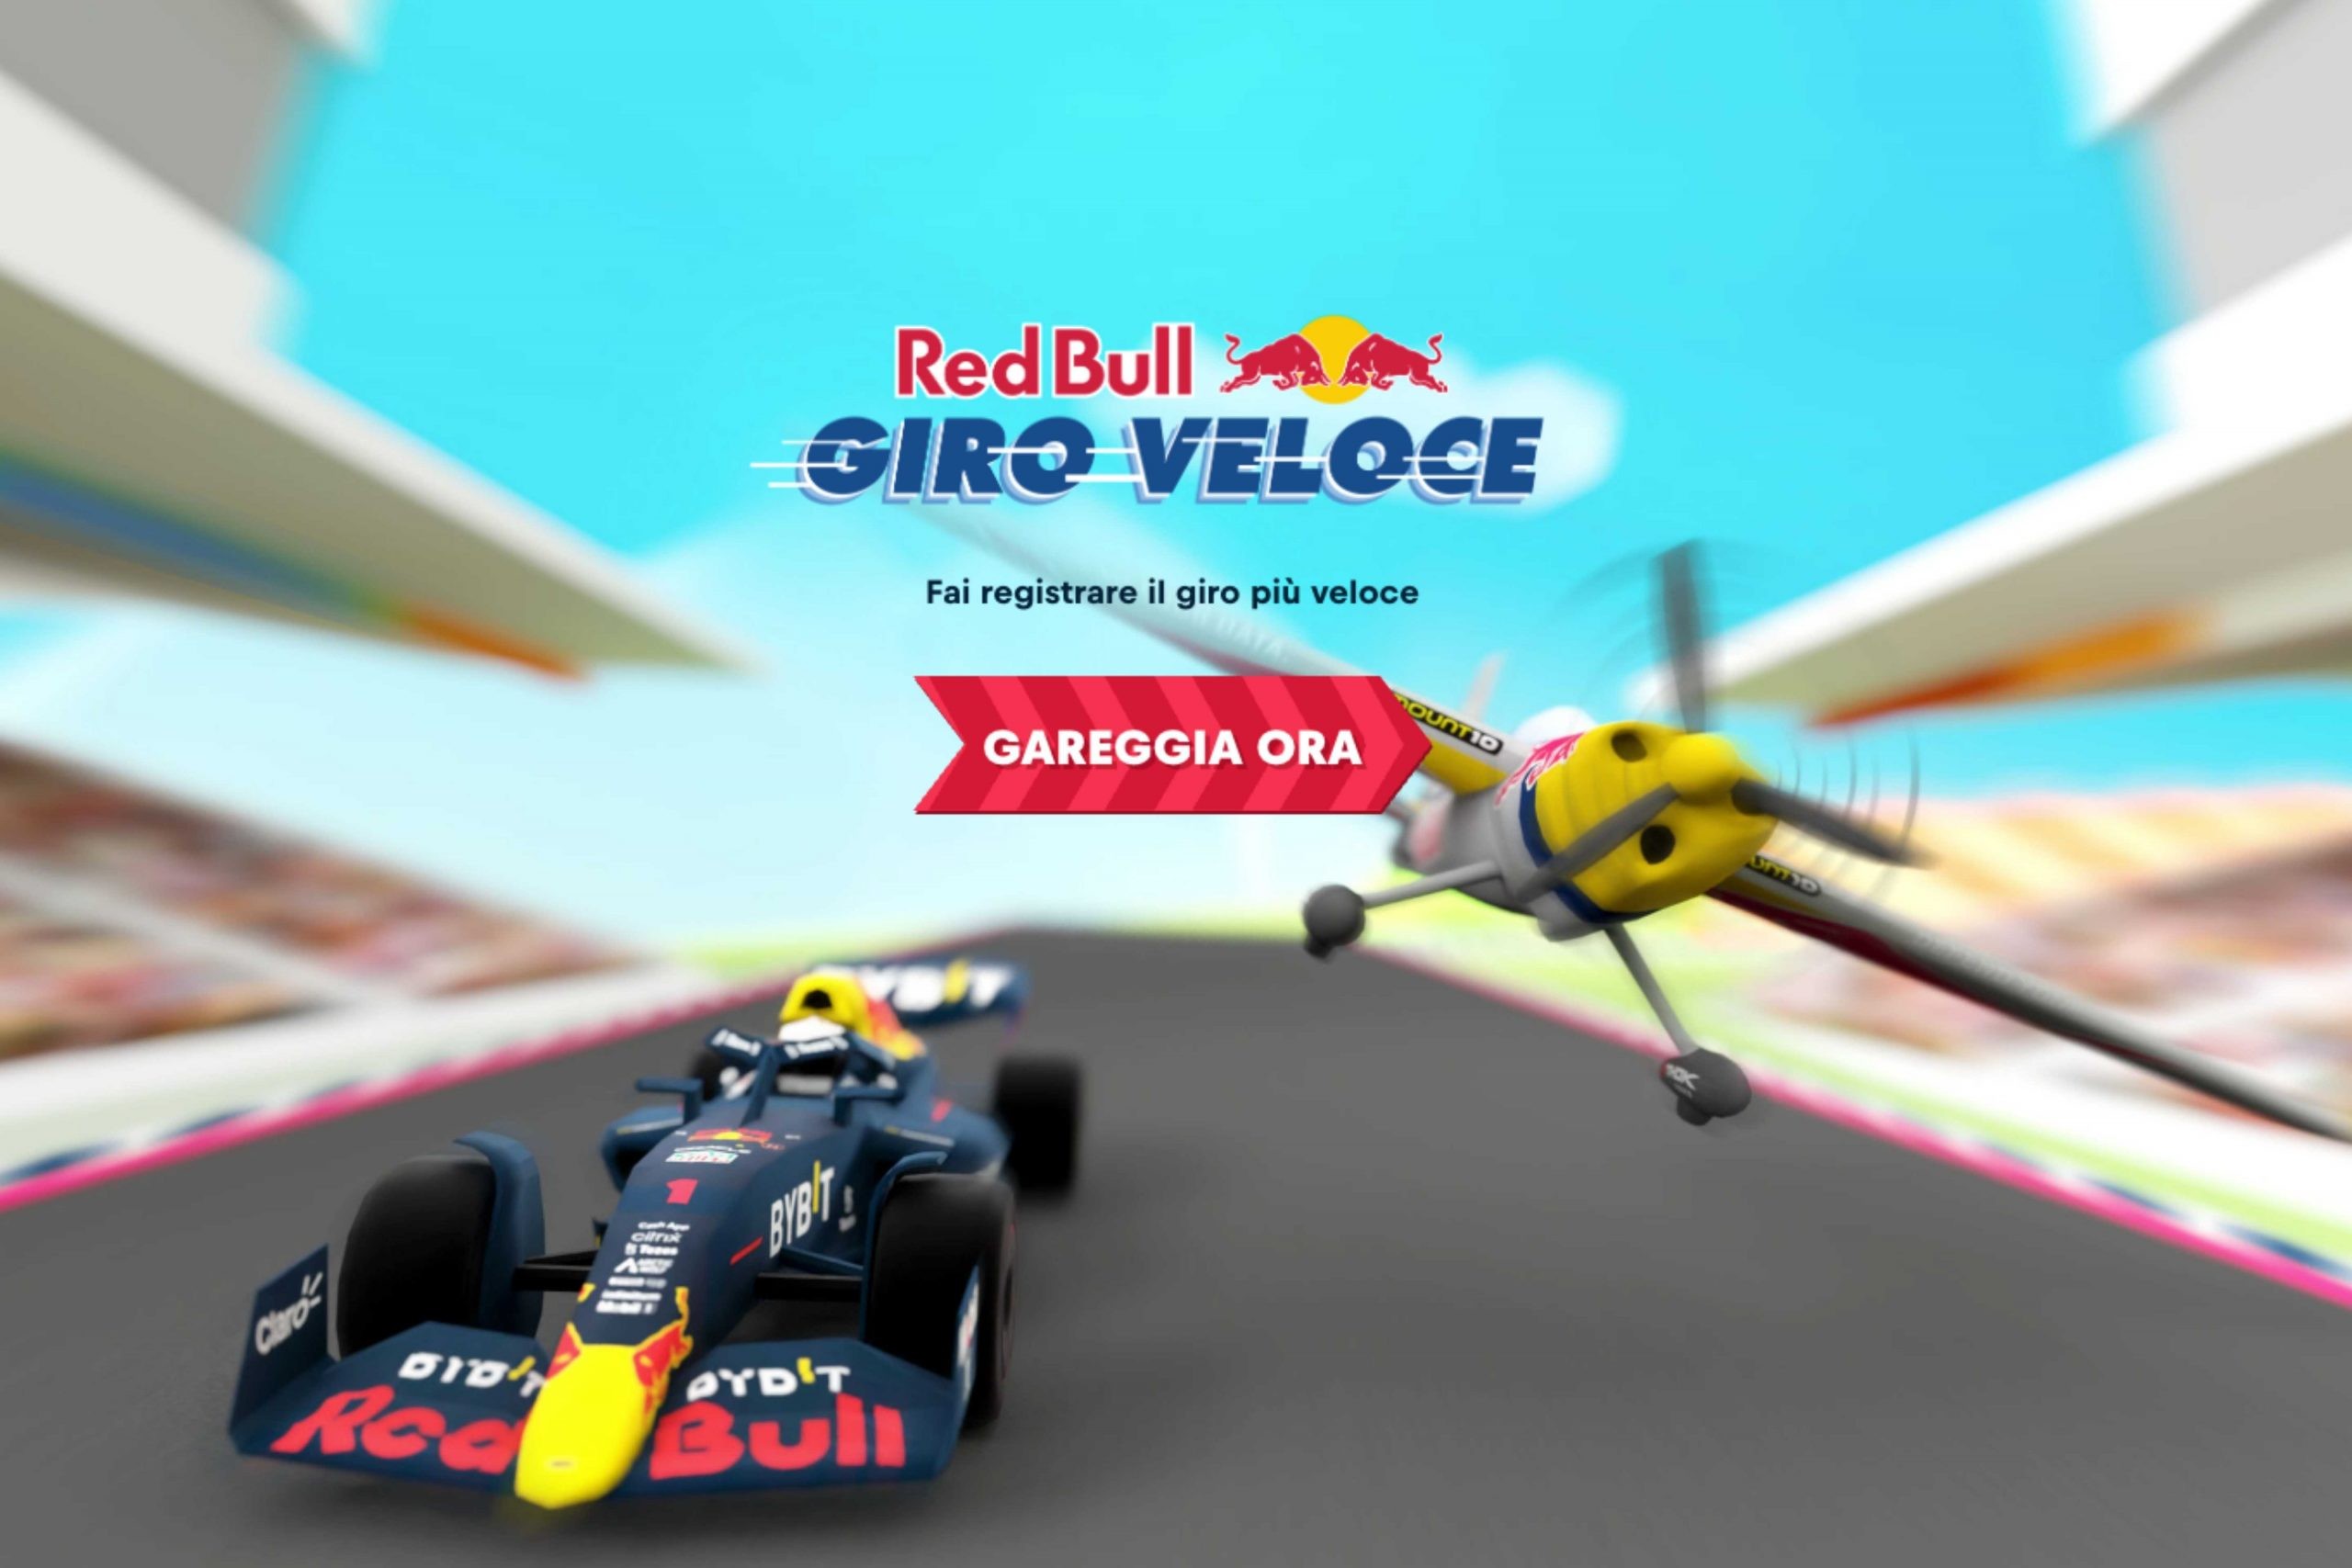 Concorso Red Bull Giro Veloce: come vincere esperienza di guida o di volo, e tanti altri premi